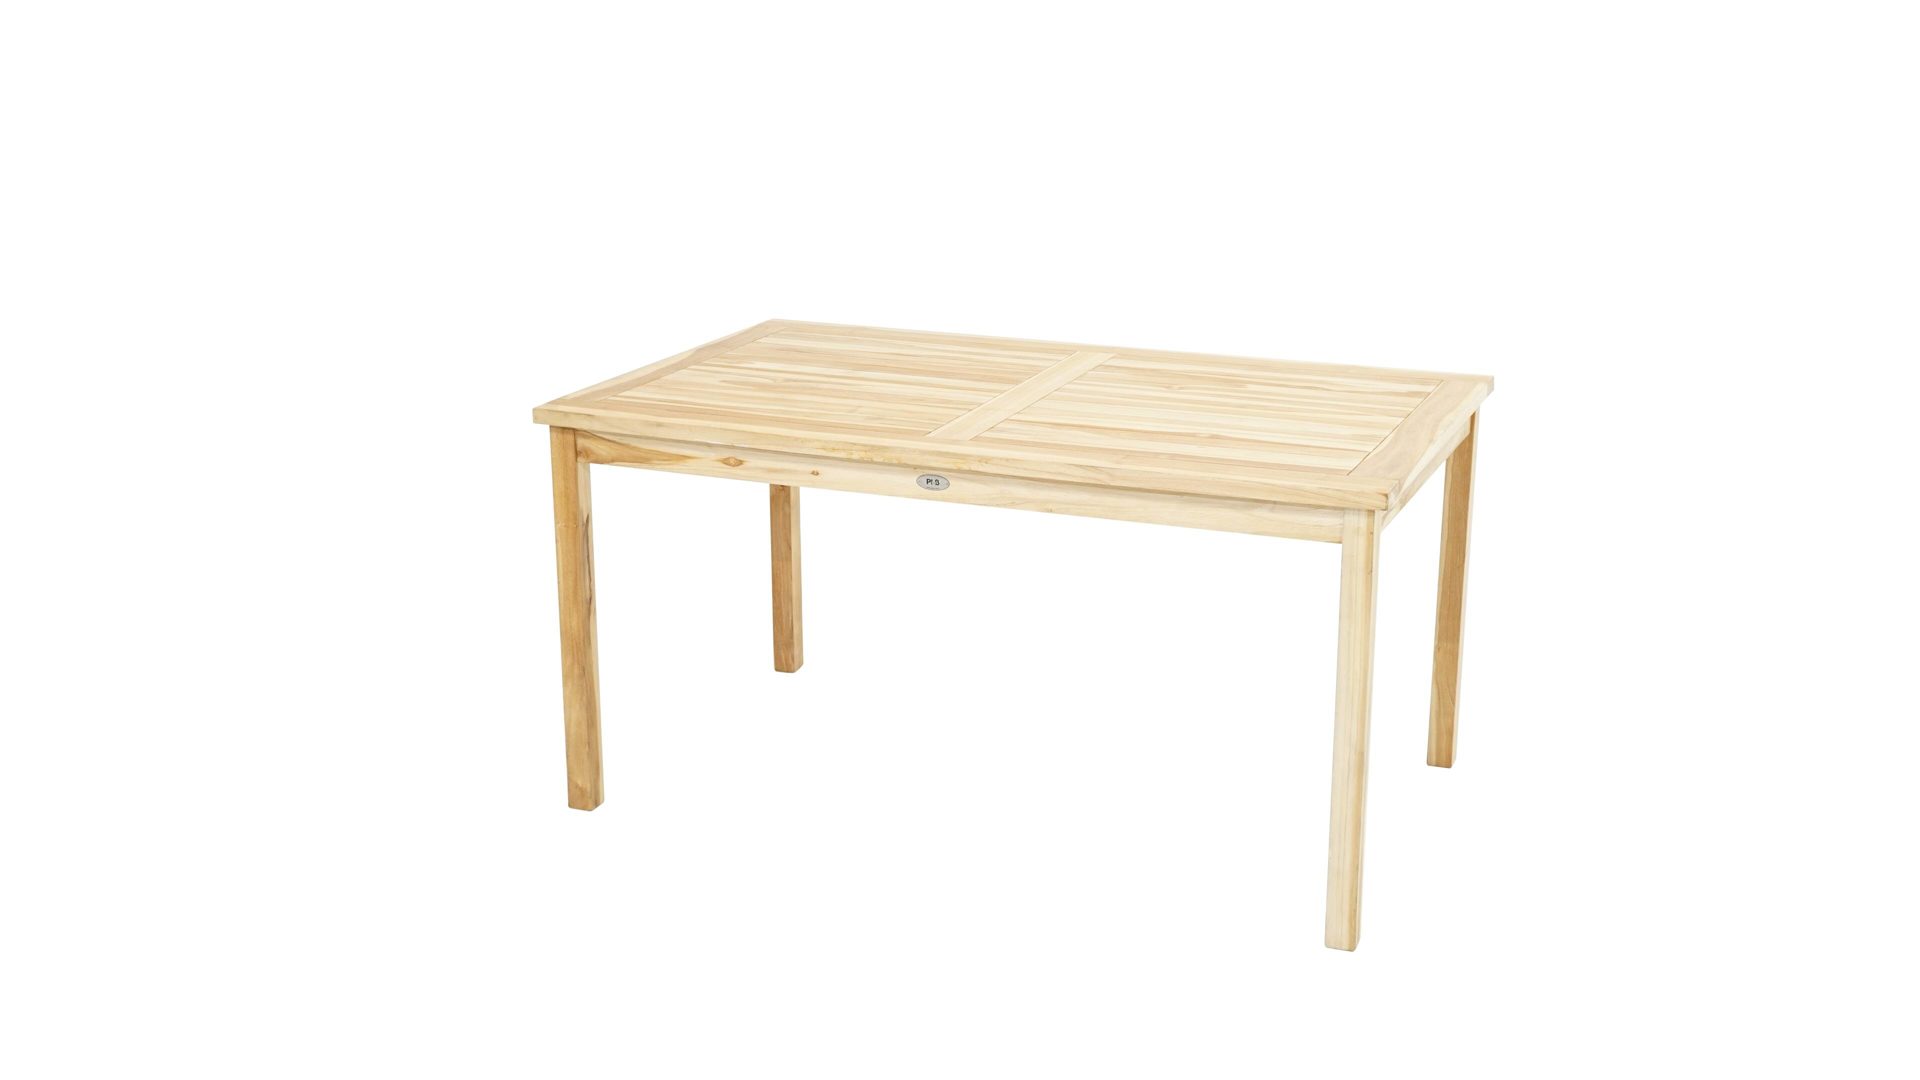 Gartentisch Ploß aus Holz in Holzfarben Ploß® Tisch Pittsburgh ECO als Gartenmöbel Eco-Teakholz – ca. 150 x 90 cm